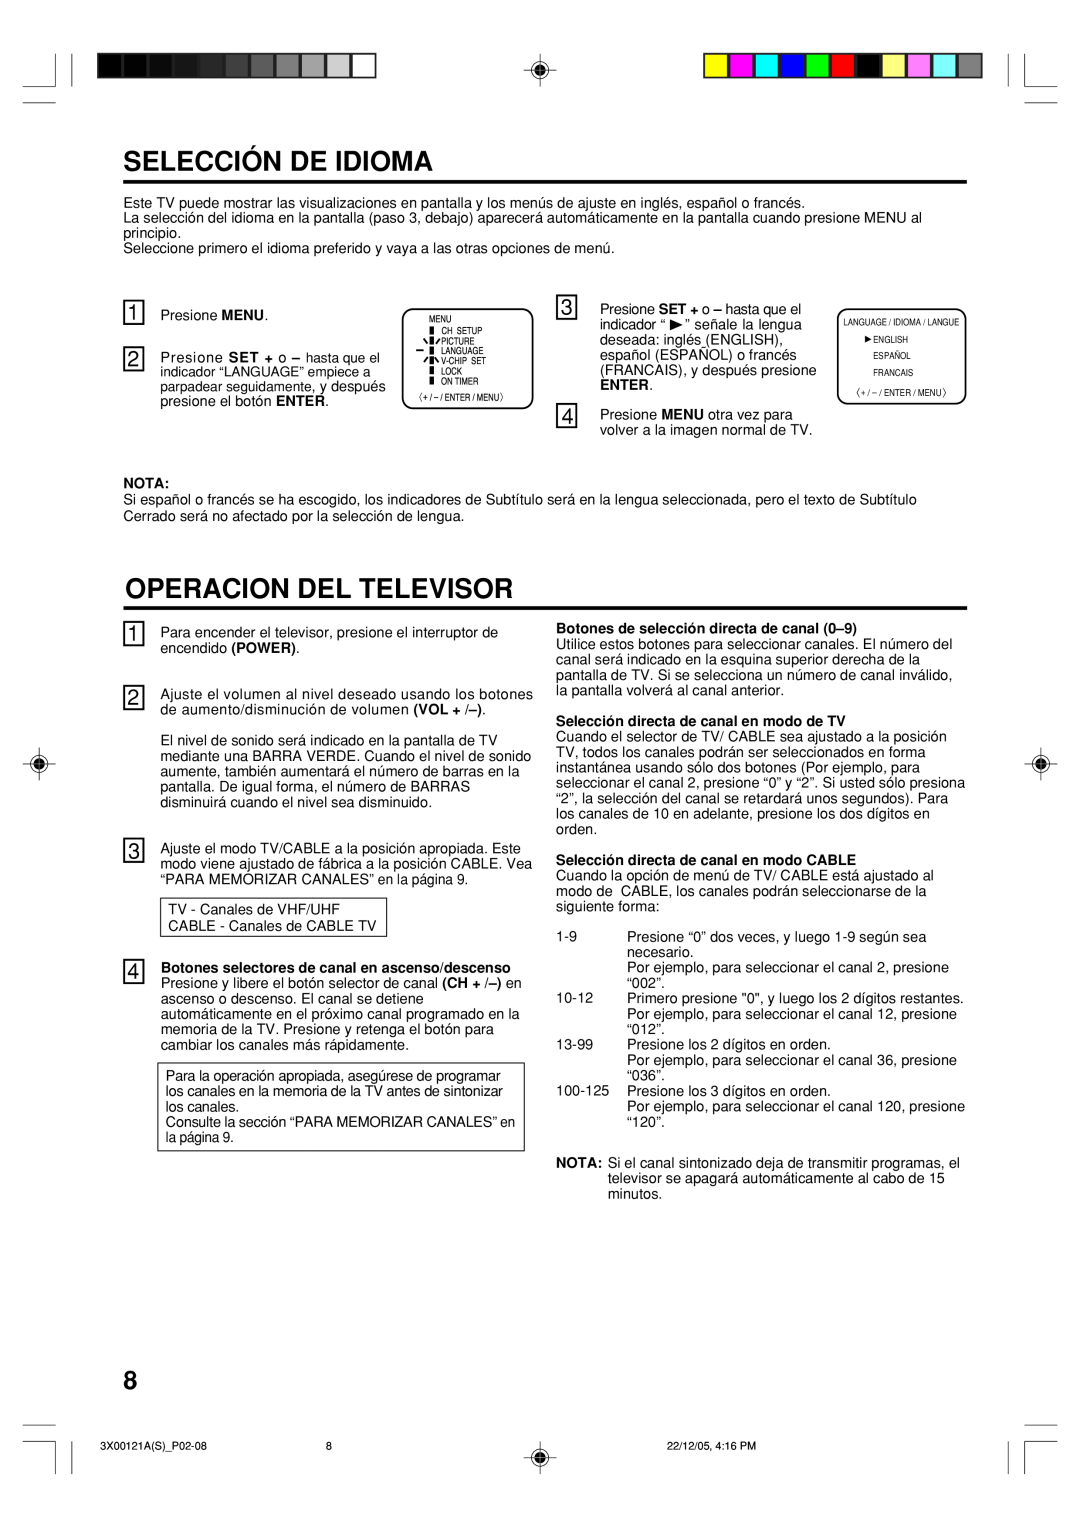 Toshiba 13A26 manual Selección De Idioma, Operacion Del Televisor, Enter, Nota, Botones de selección directa de canal 